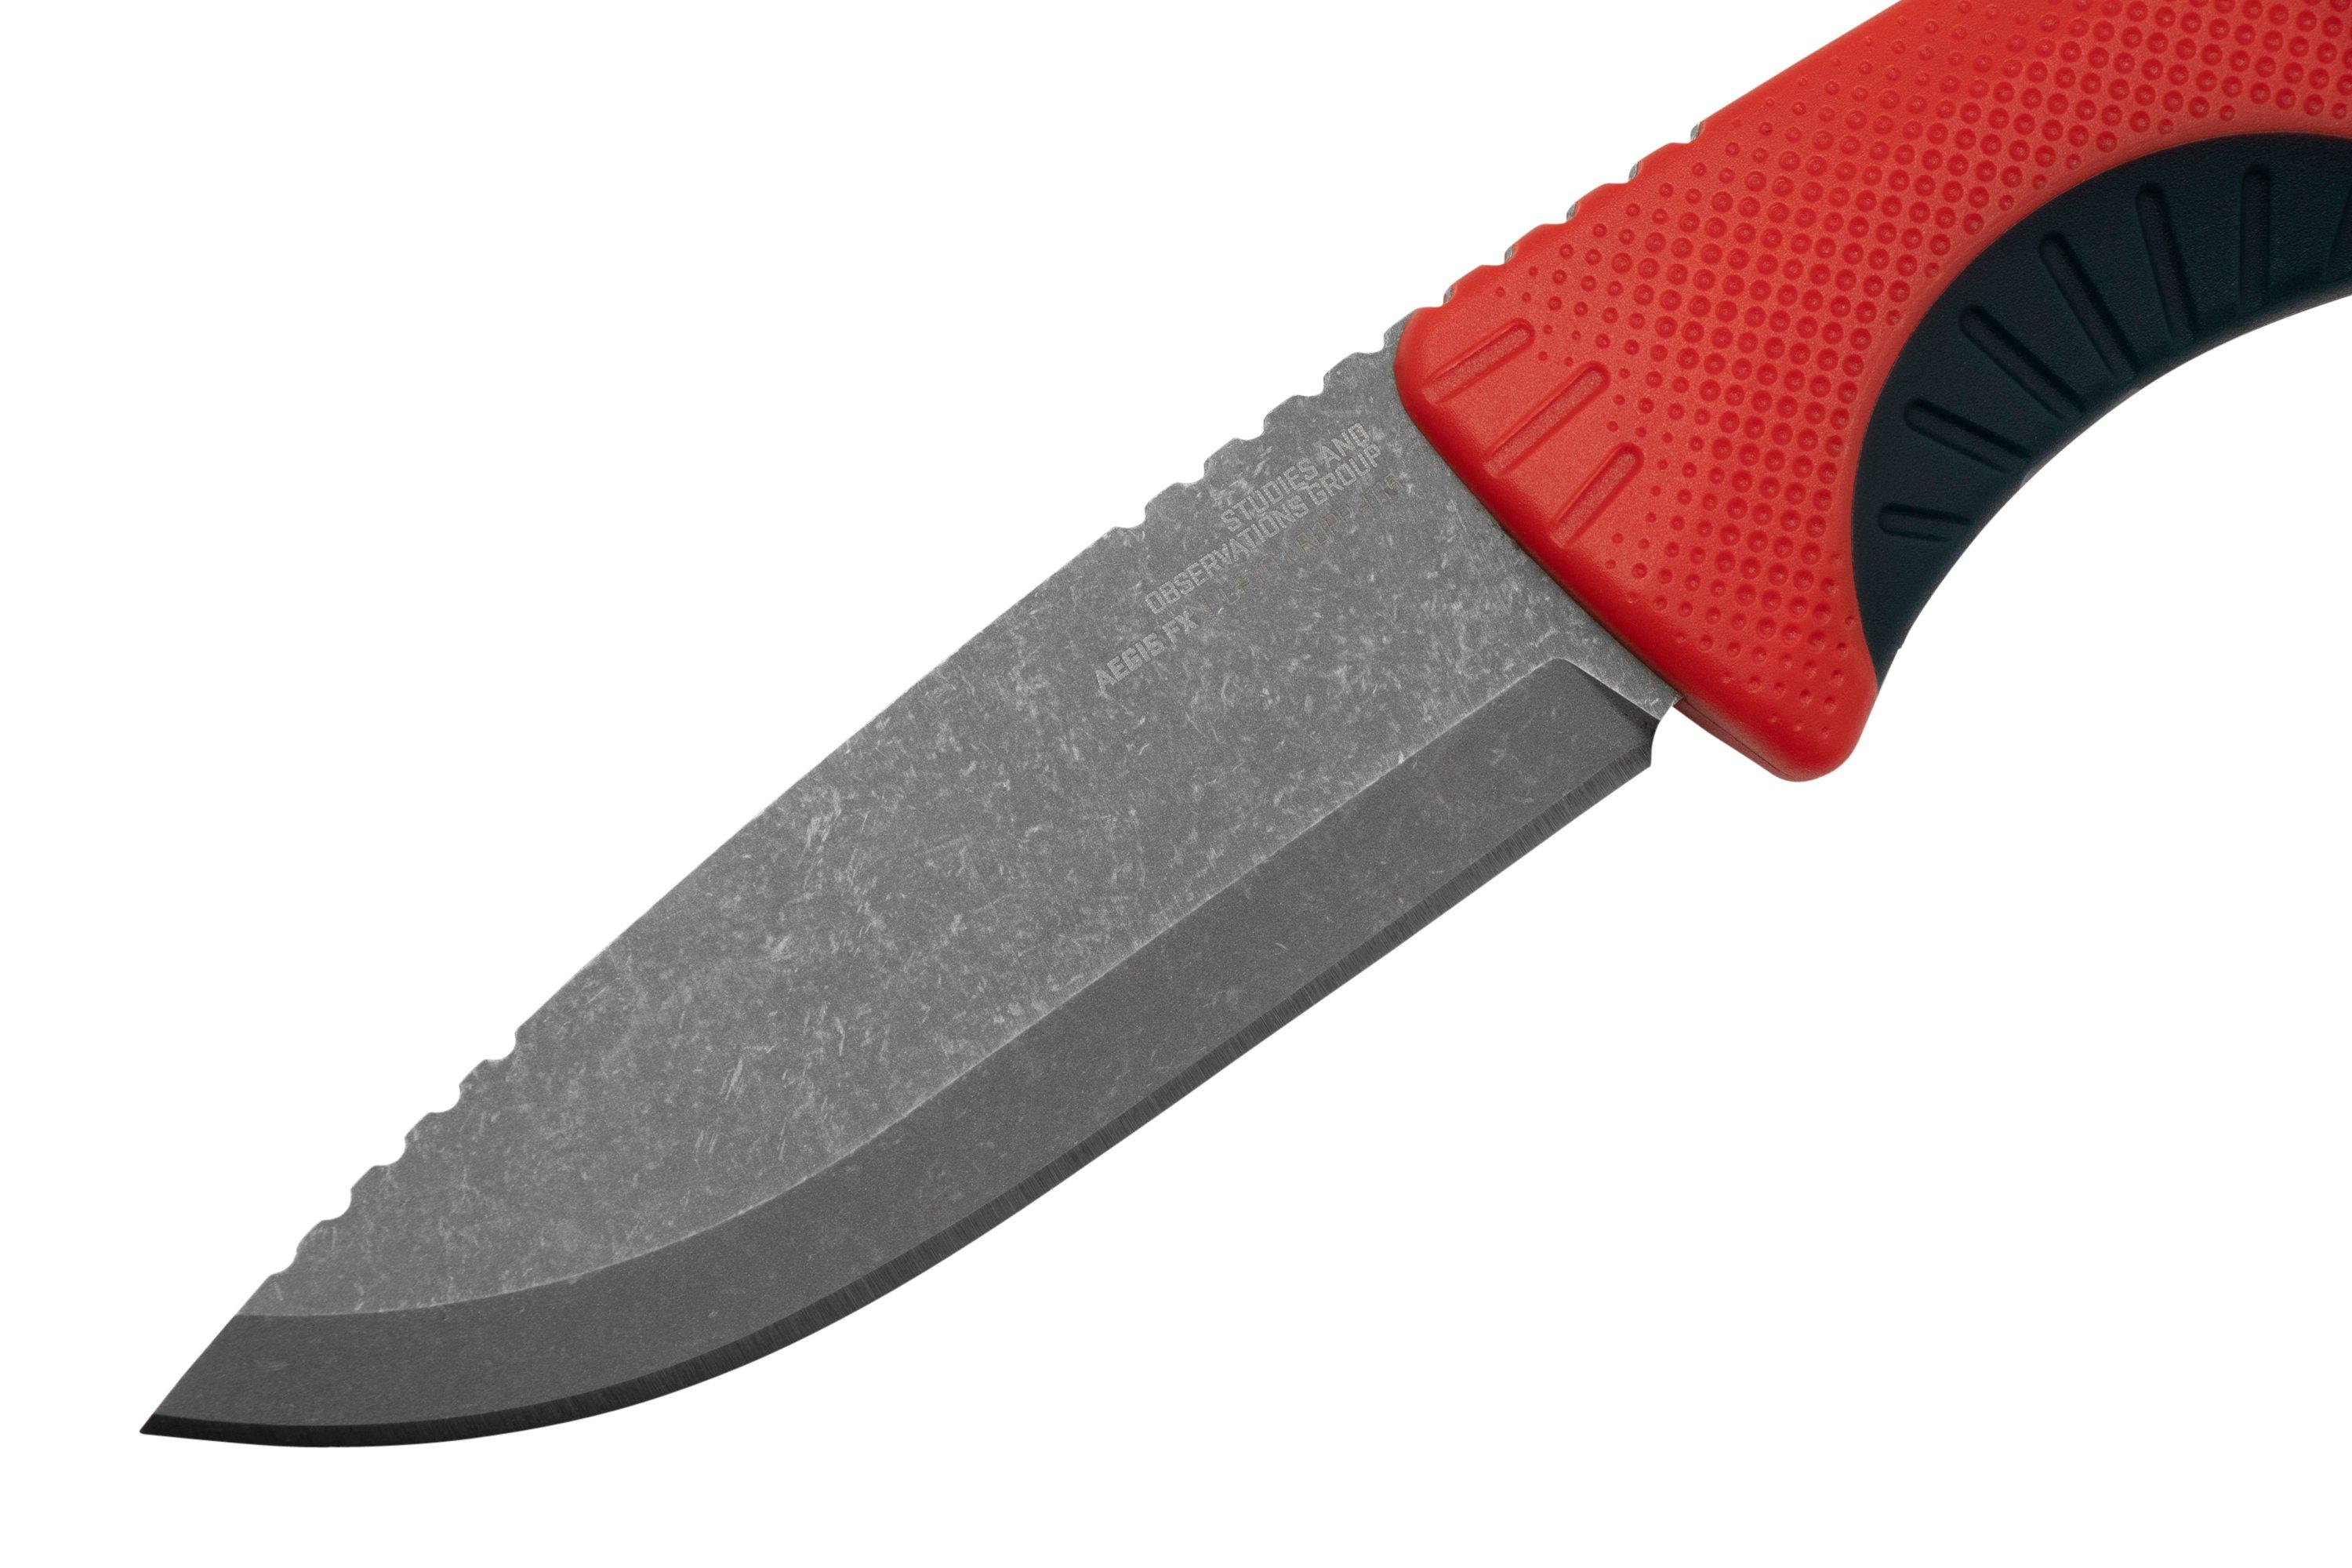 SOG Knives Aegis FX Knife - Rescue Red + Indigo